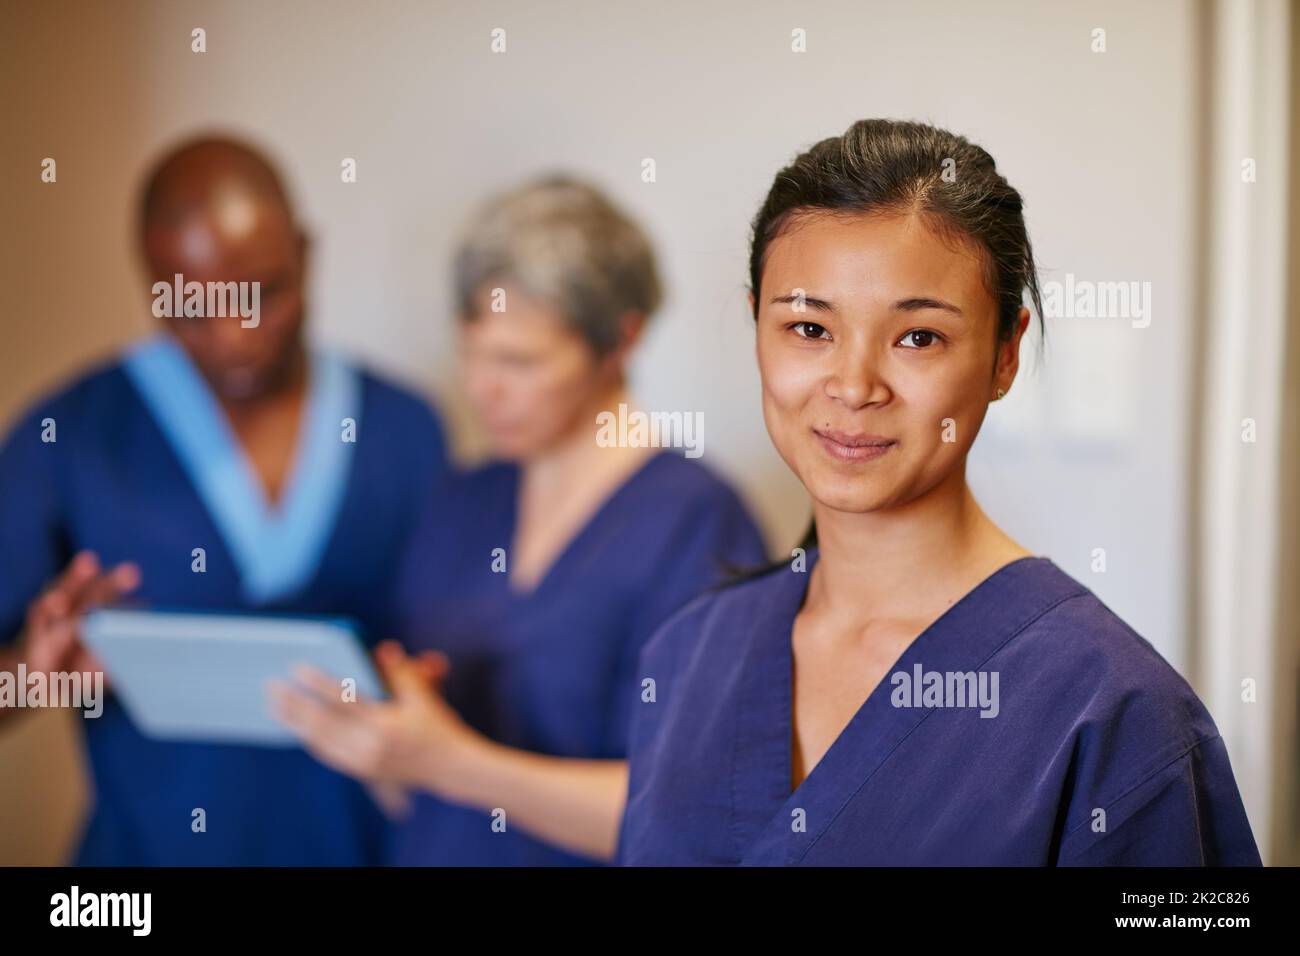 Menschen zu helfen ist so erfüllend. Zugeschnittenes Porträt einer Krankenschwester, die in einem Krankenhaus steht, mit ihren Kollegen im Hintergrund. Stockfoto